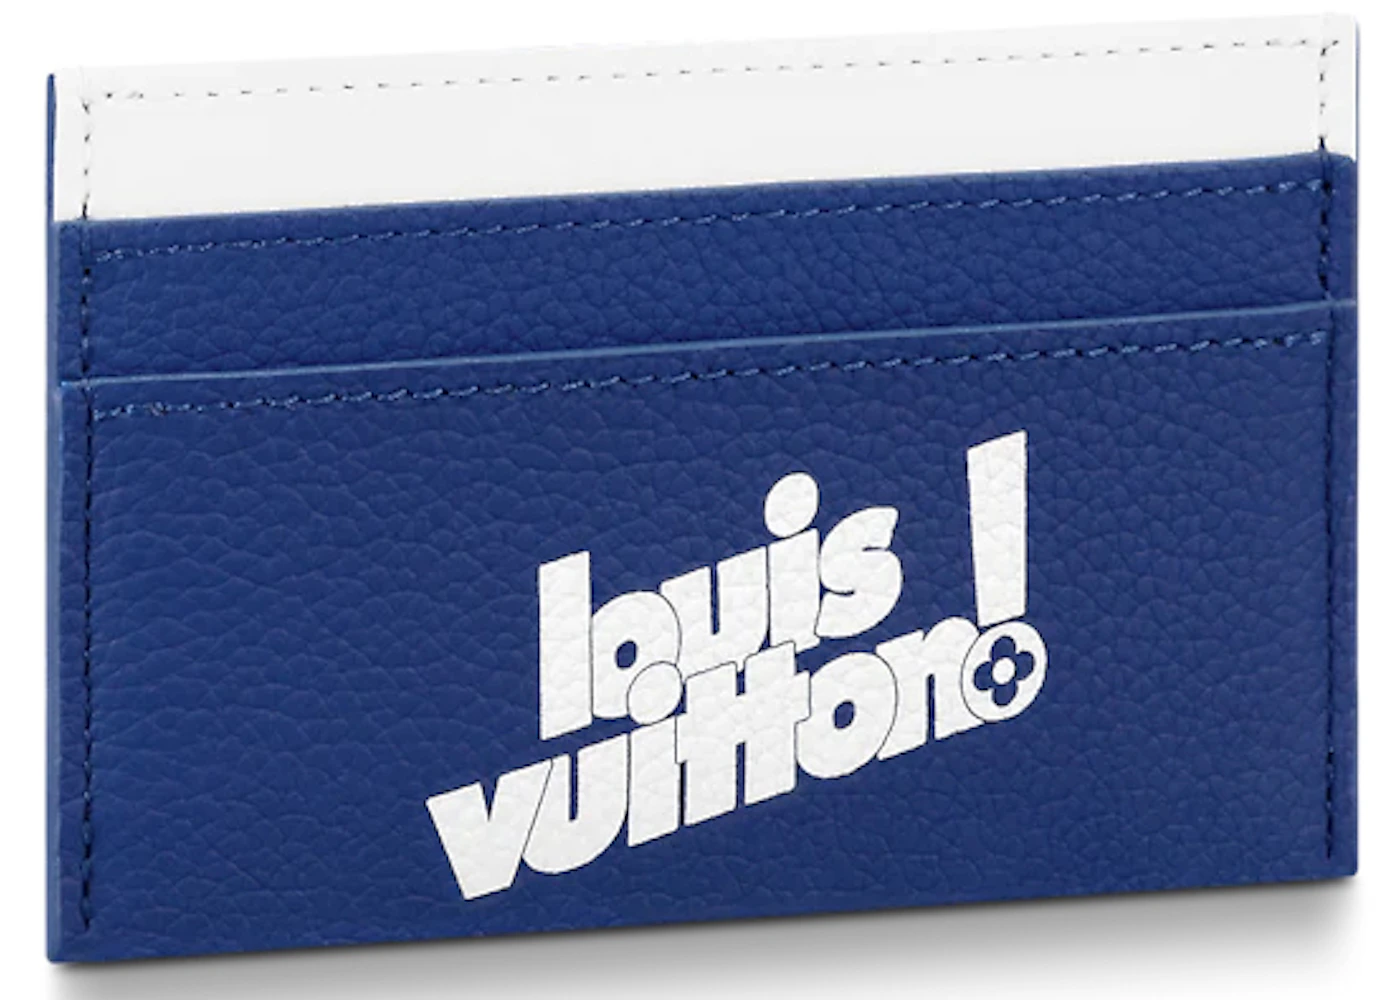 Louis Vuitton, Accessories, Louis Vuitton Mens Double Card Holder Wallet  Black Monogram